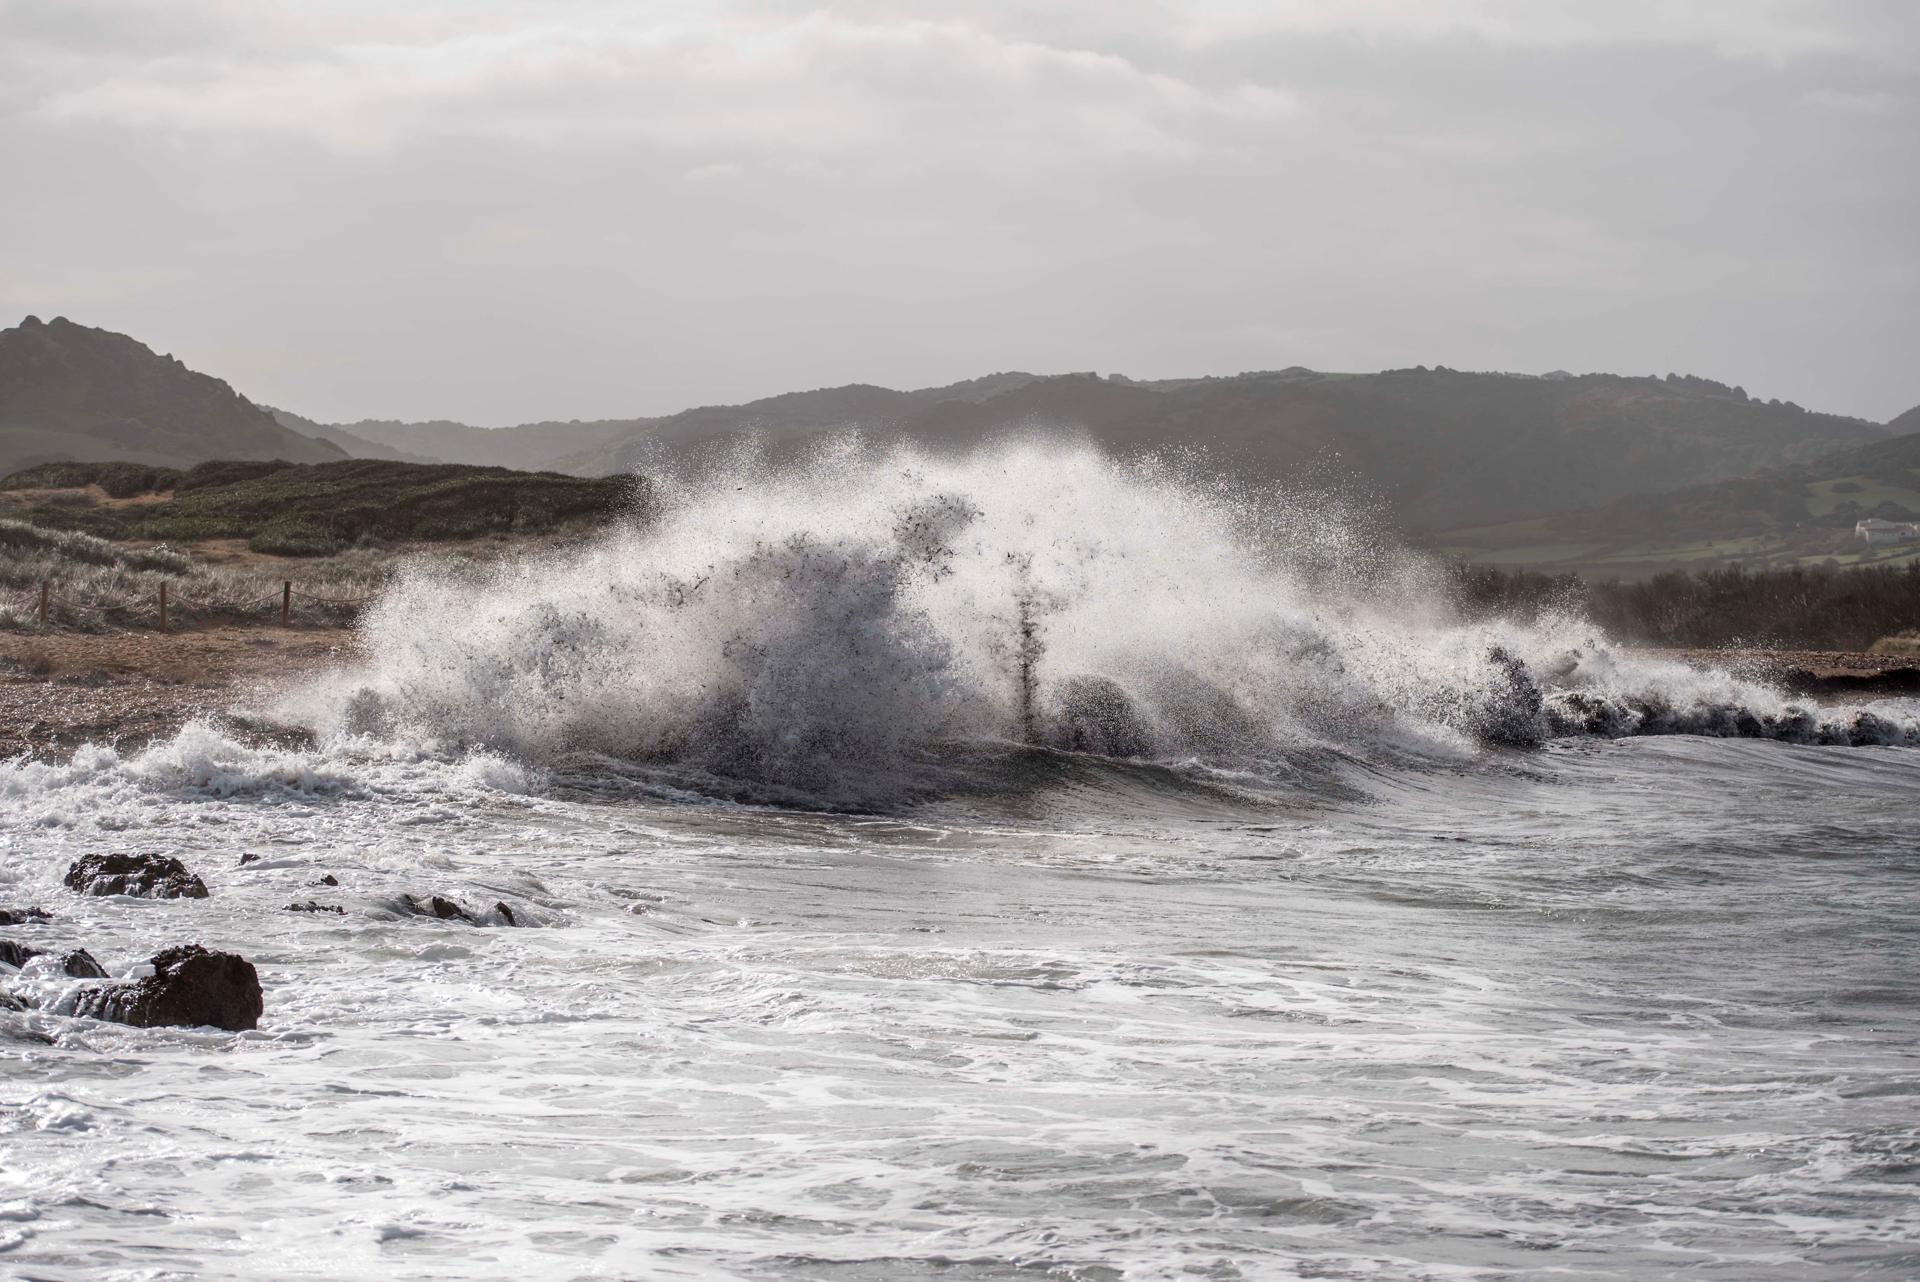 En la imagen de archivo, vista del fuerte oleaje en las aguas de la playa Binimel-là, en Menorca. EFE/ David Arquimbau